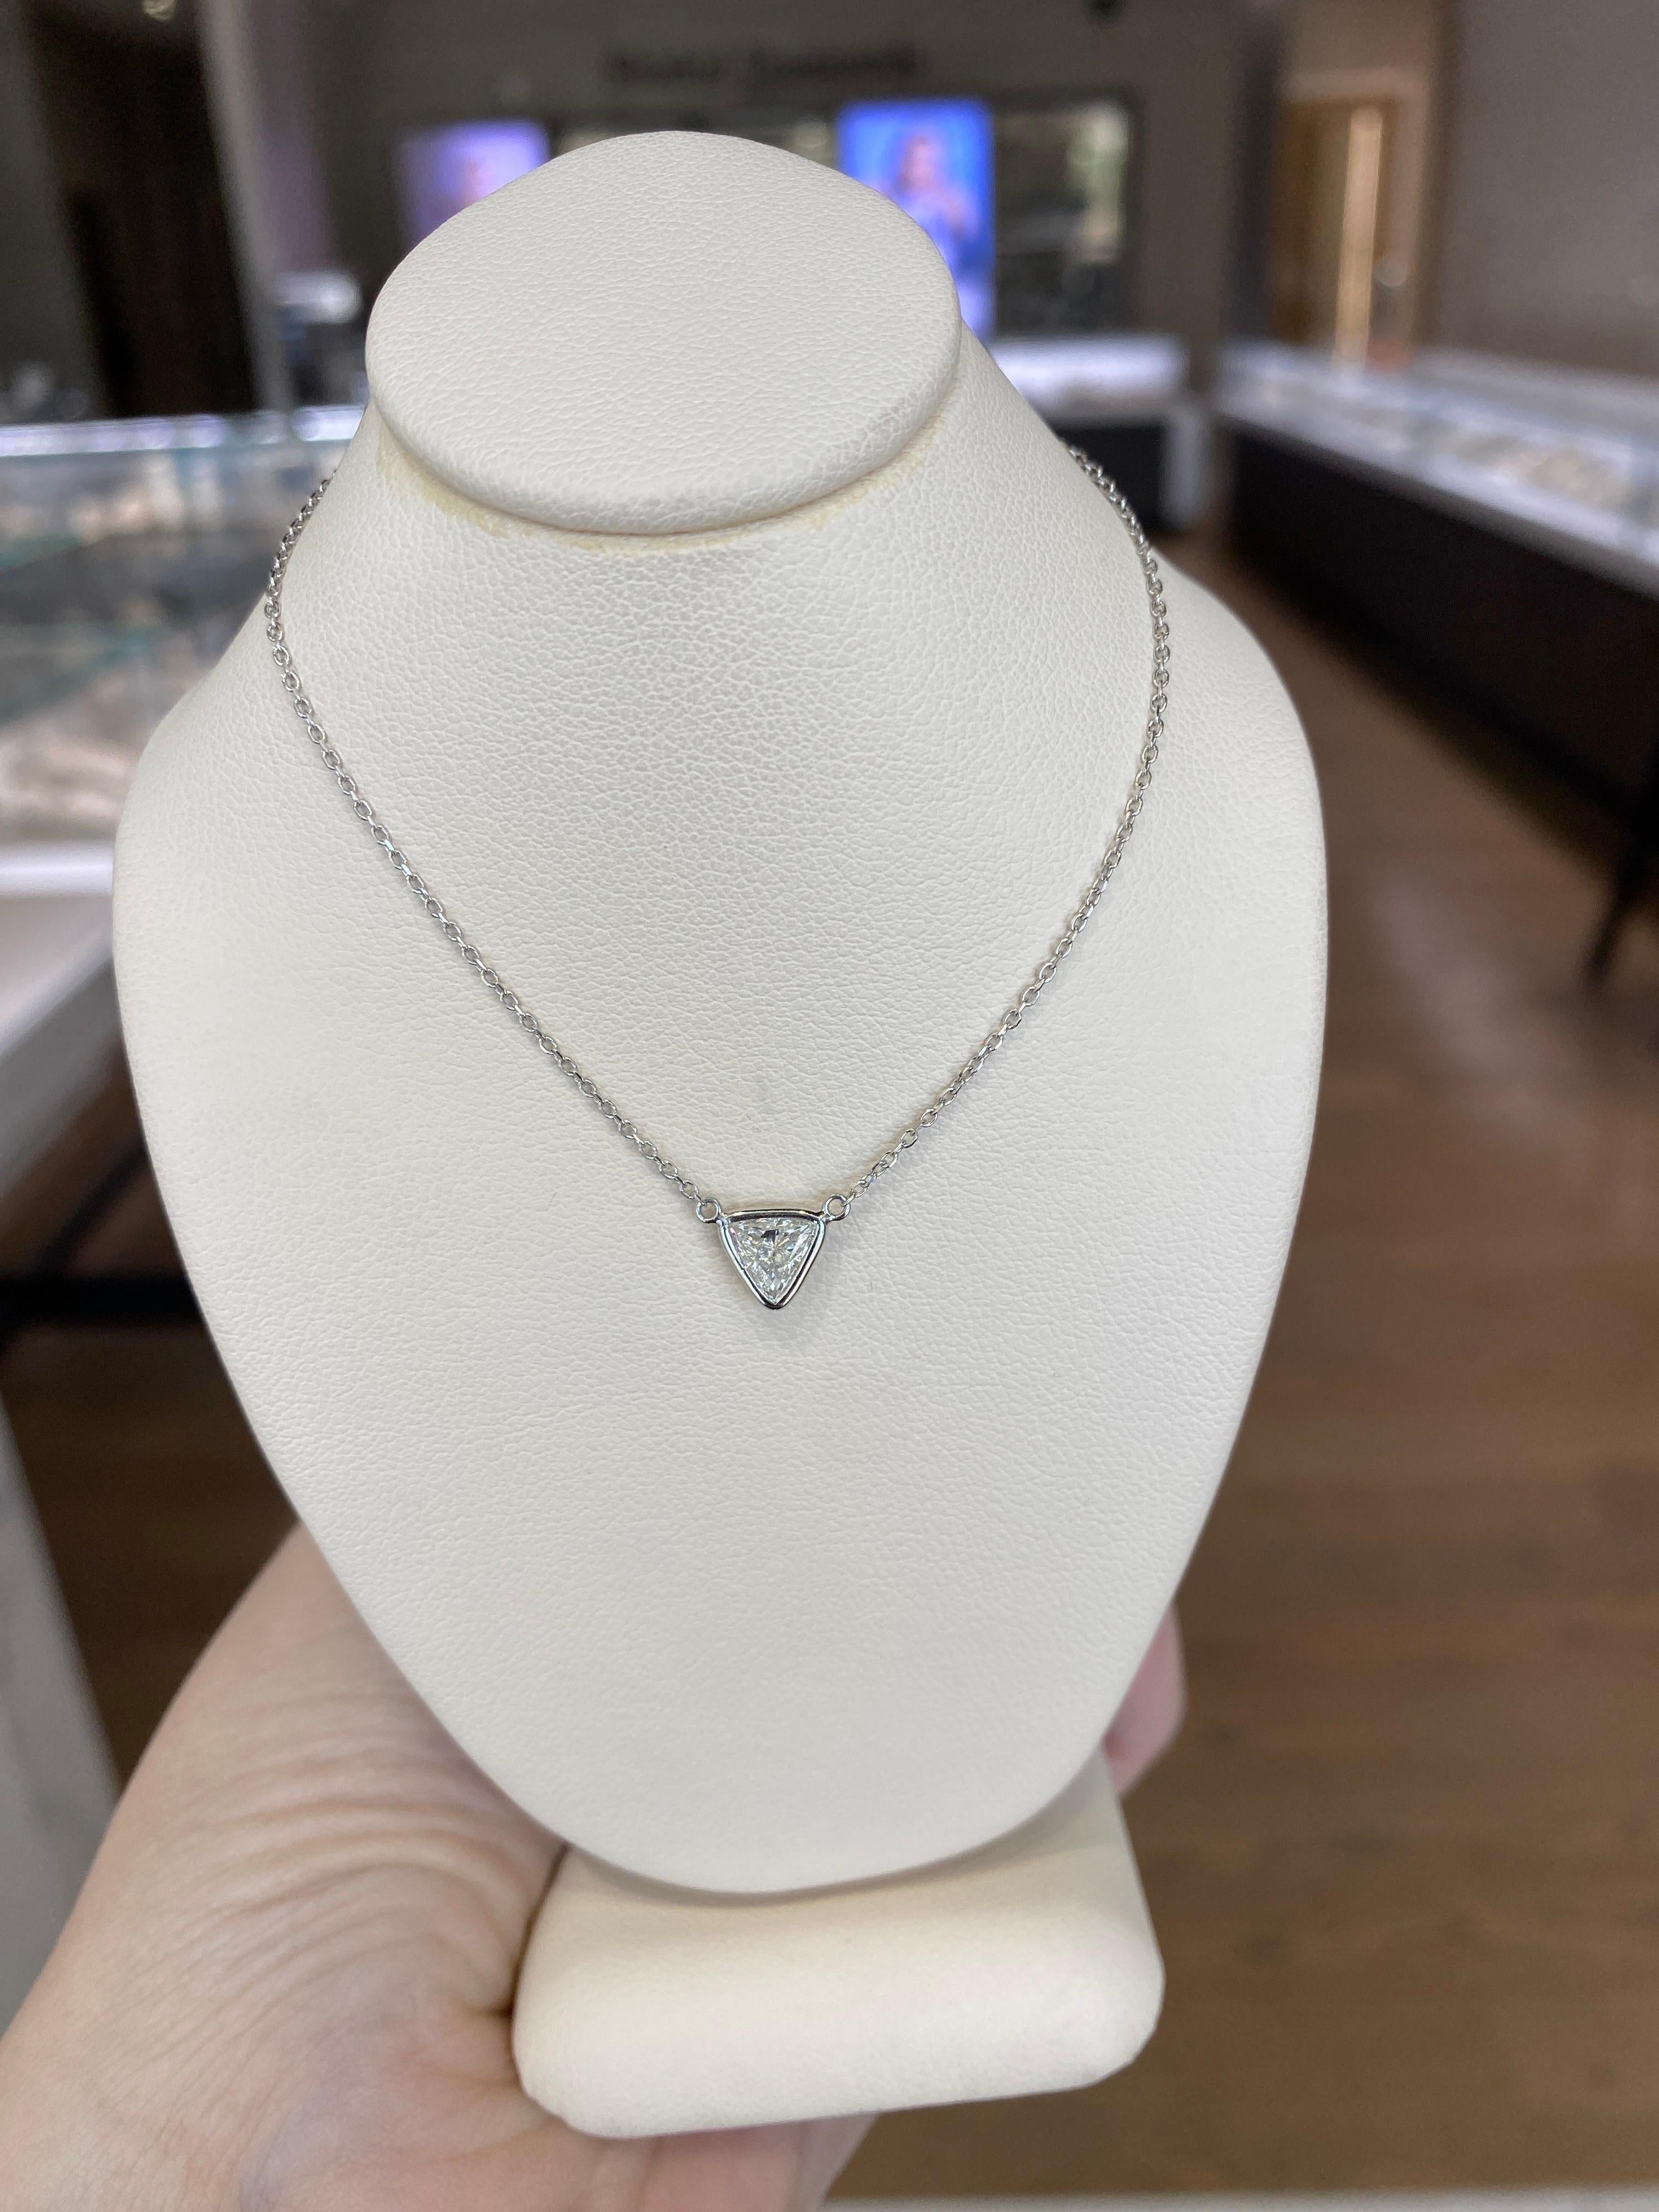 0.46 Carat Natural Trillion Cut Diamond Pendant Necklace, 14k White Gold For Sale 11